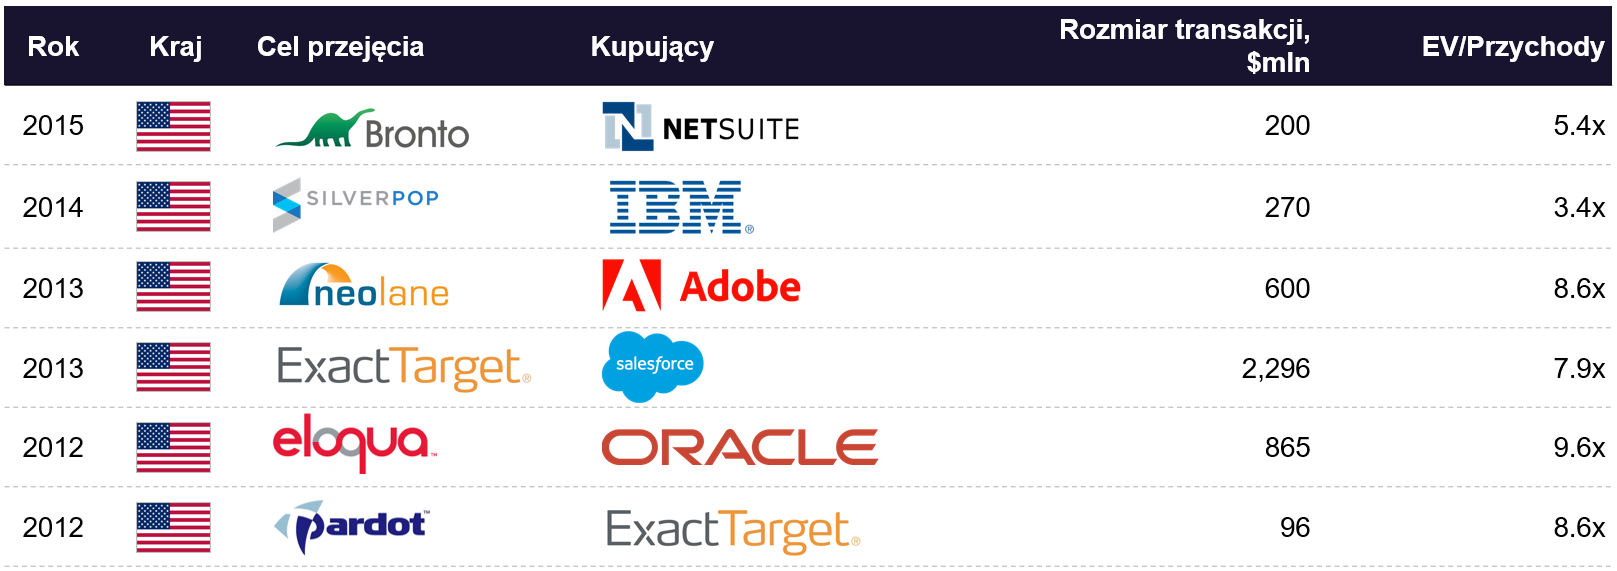 Przejęcia w zakresie e-mail marketingu: NetSuite, IBM, Adobe, Salesforce, Oracle, ExactTarget